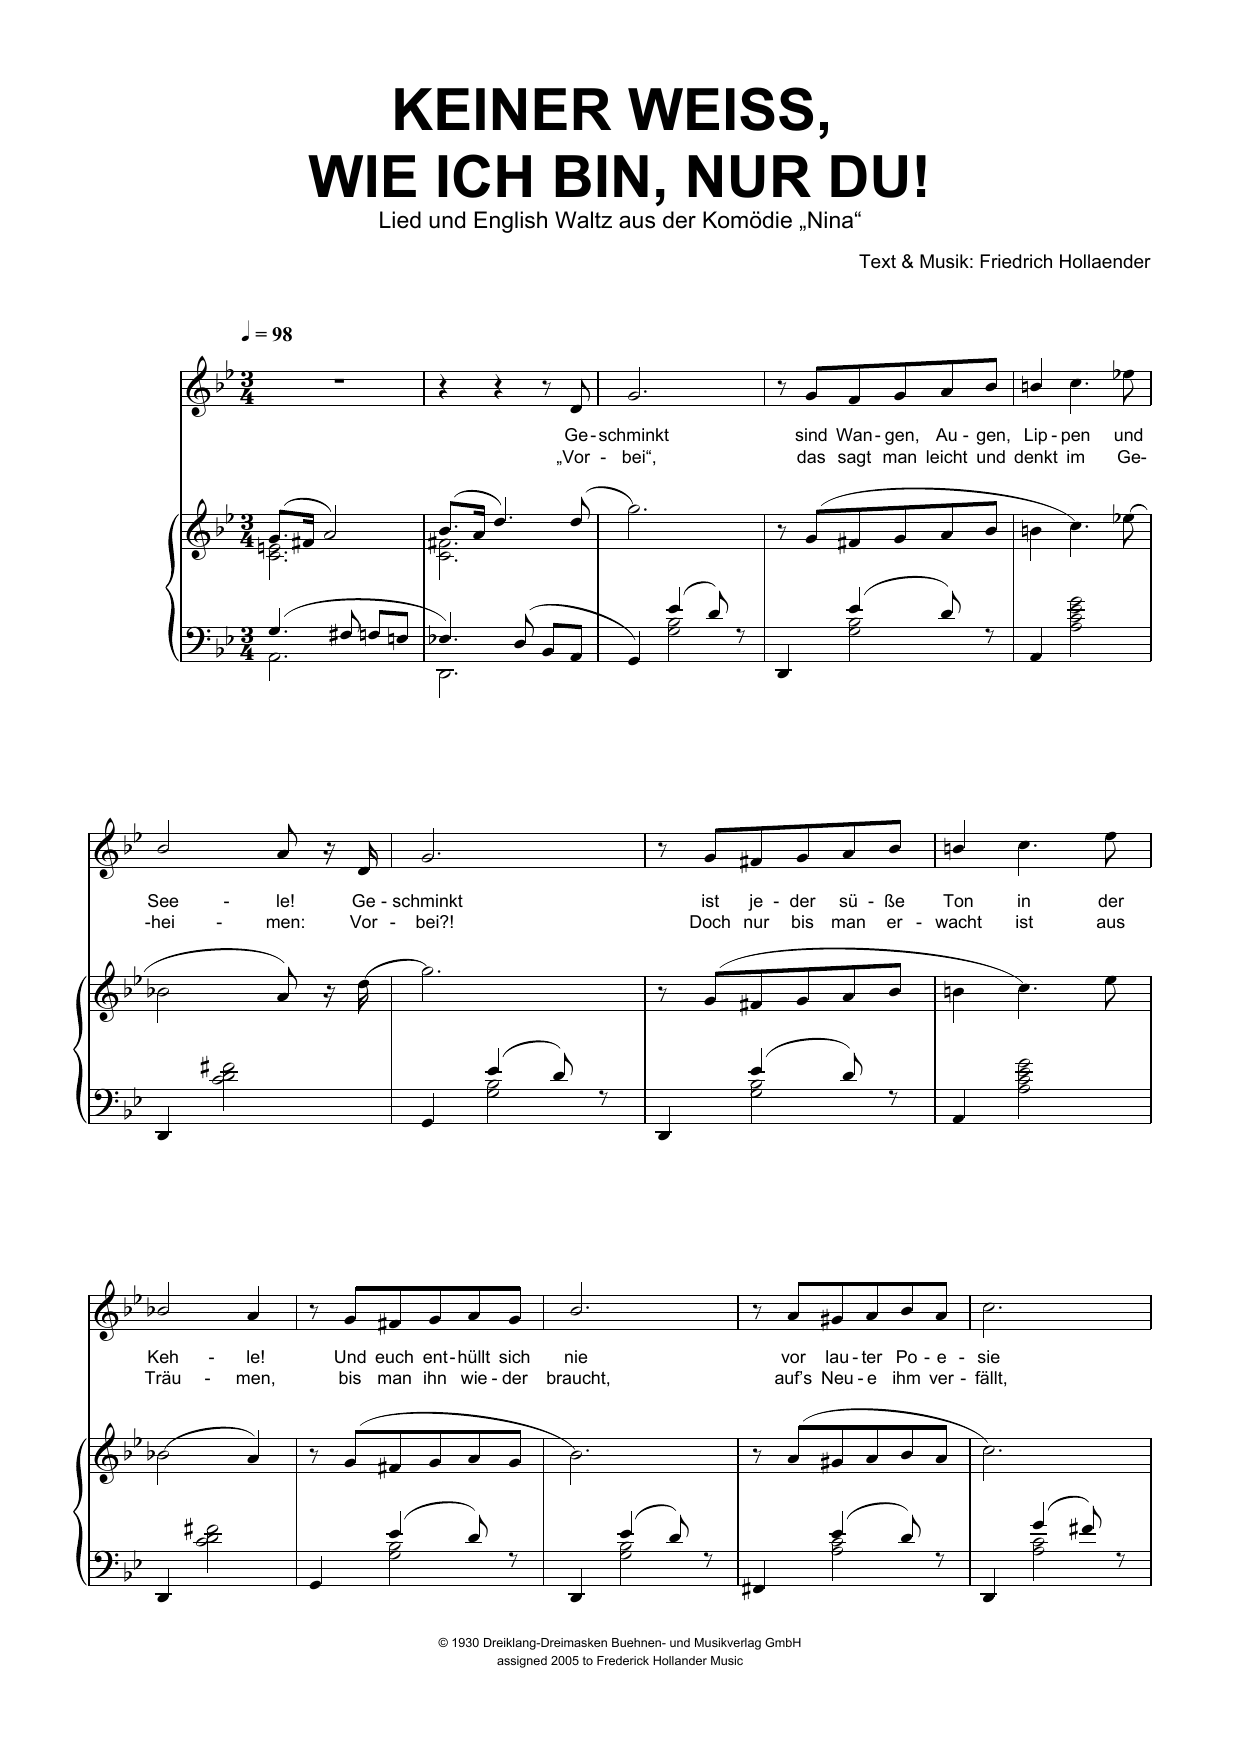 Friedrich Hollaender Keiner Weiss, Wie Ich Bin, Nur Du! Sheet Music Notes & Chords for Piano & Vocal - Download or Print PDF